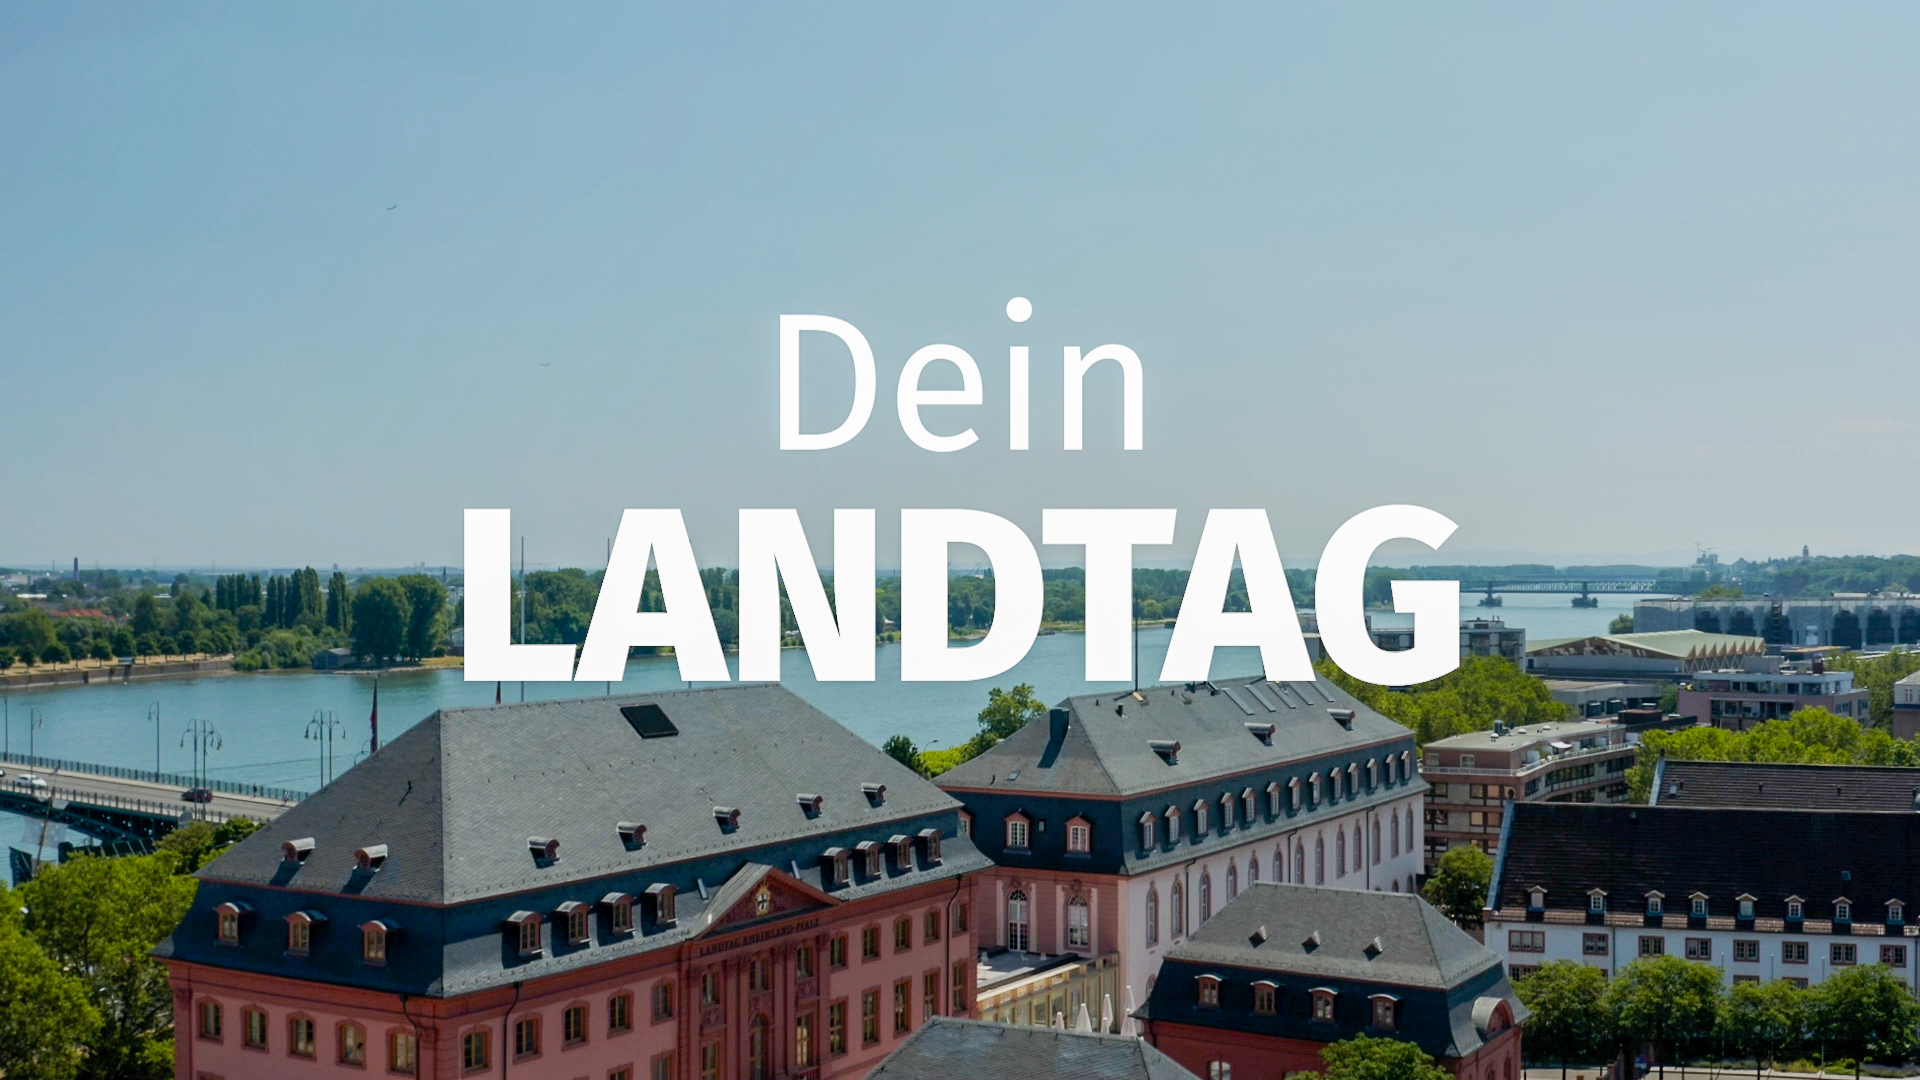 Dein Landtag - Imagefilm 2023 über den Landtag Rheinland-Pfalz